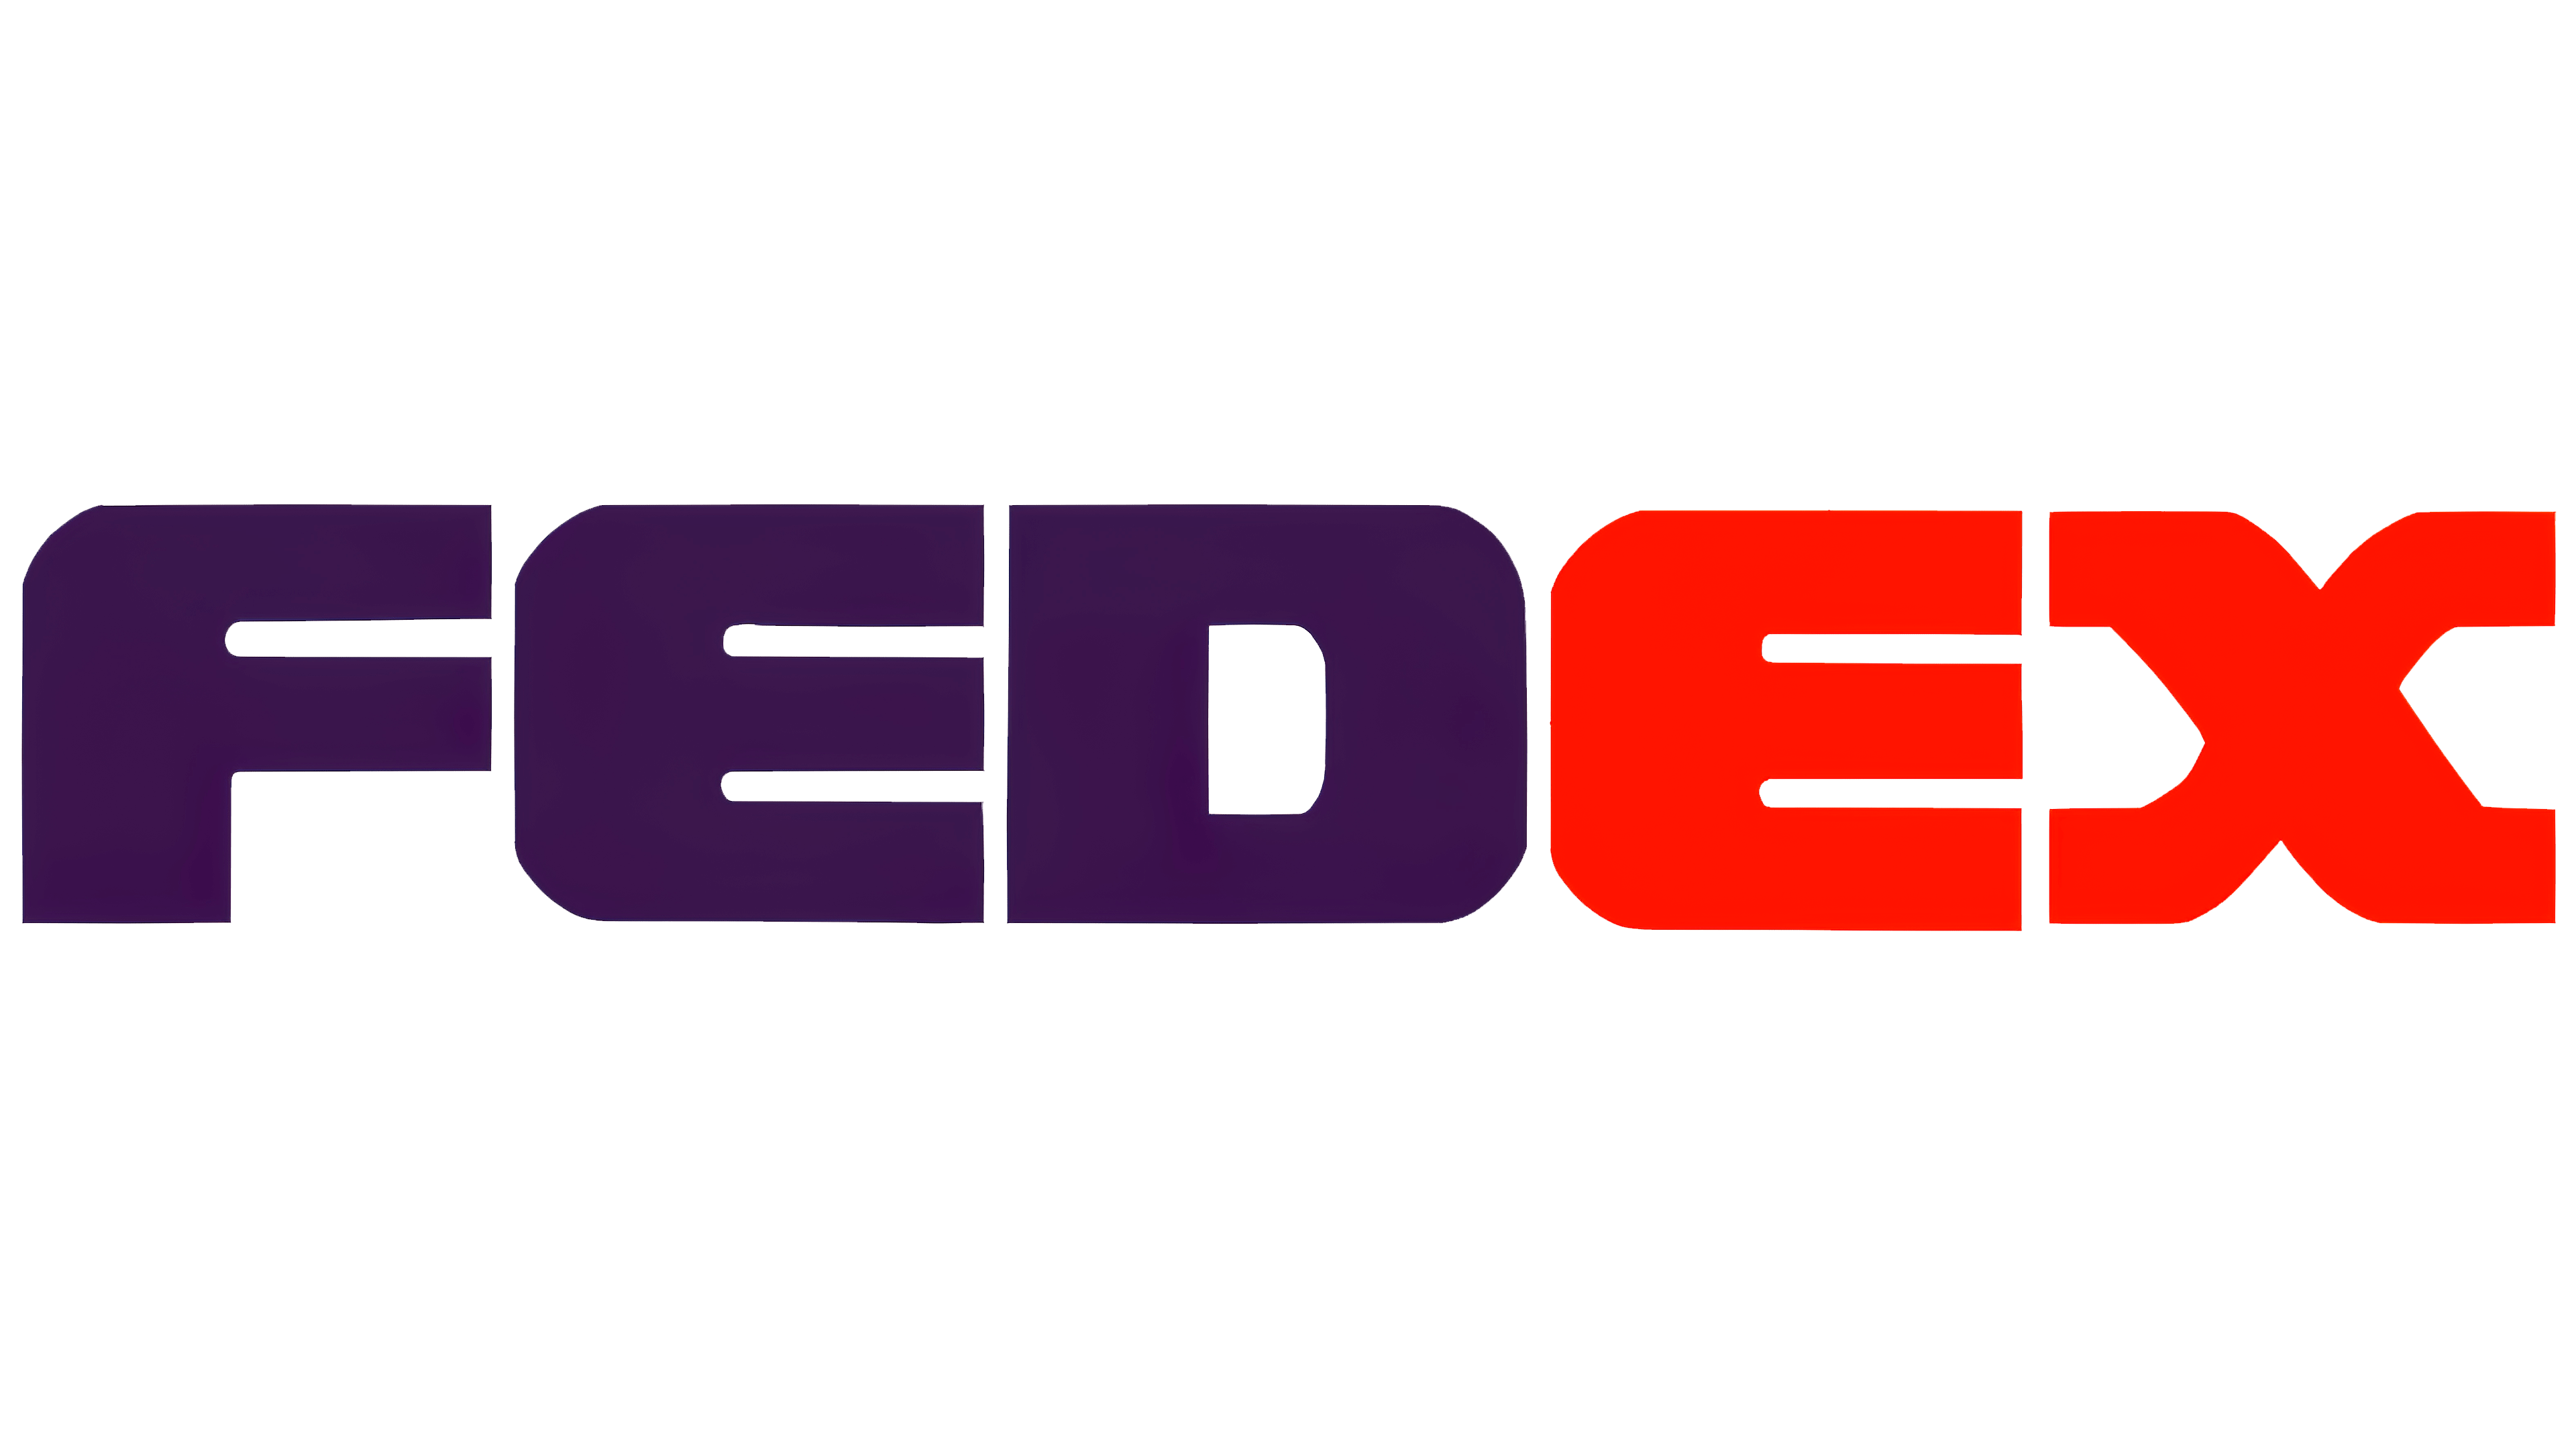 Logo Fedex HD Image Free PNG Image